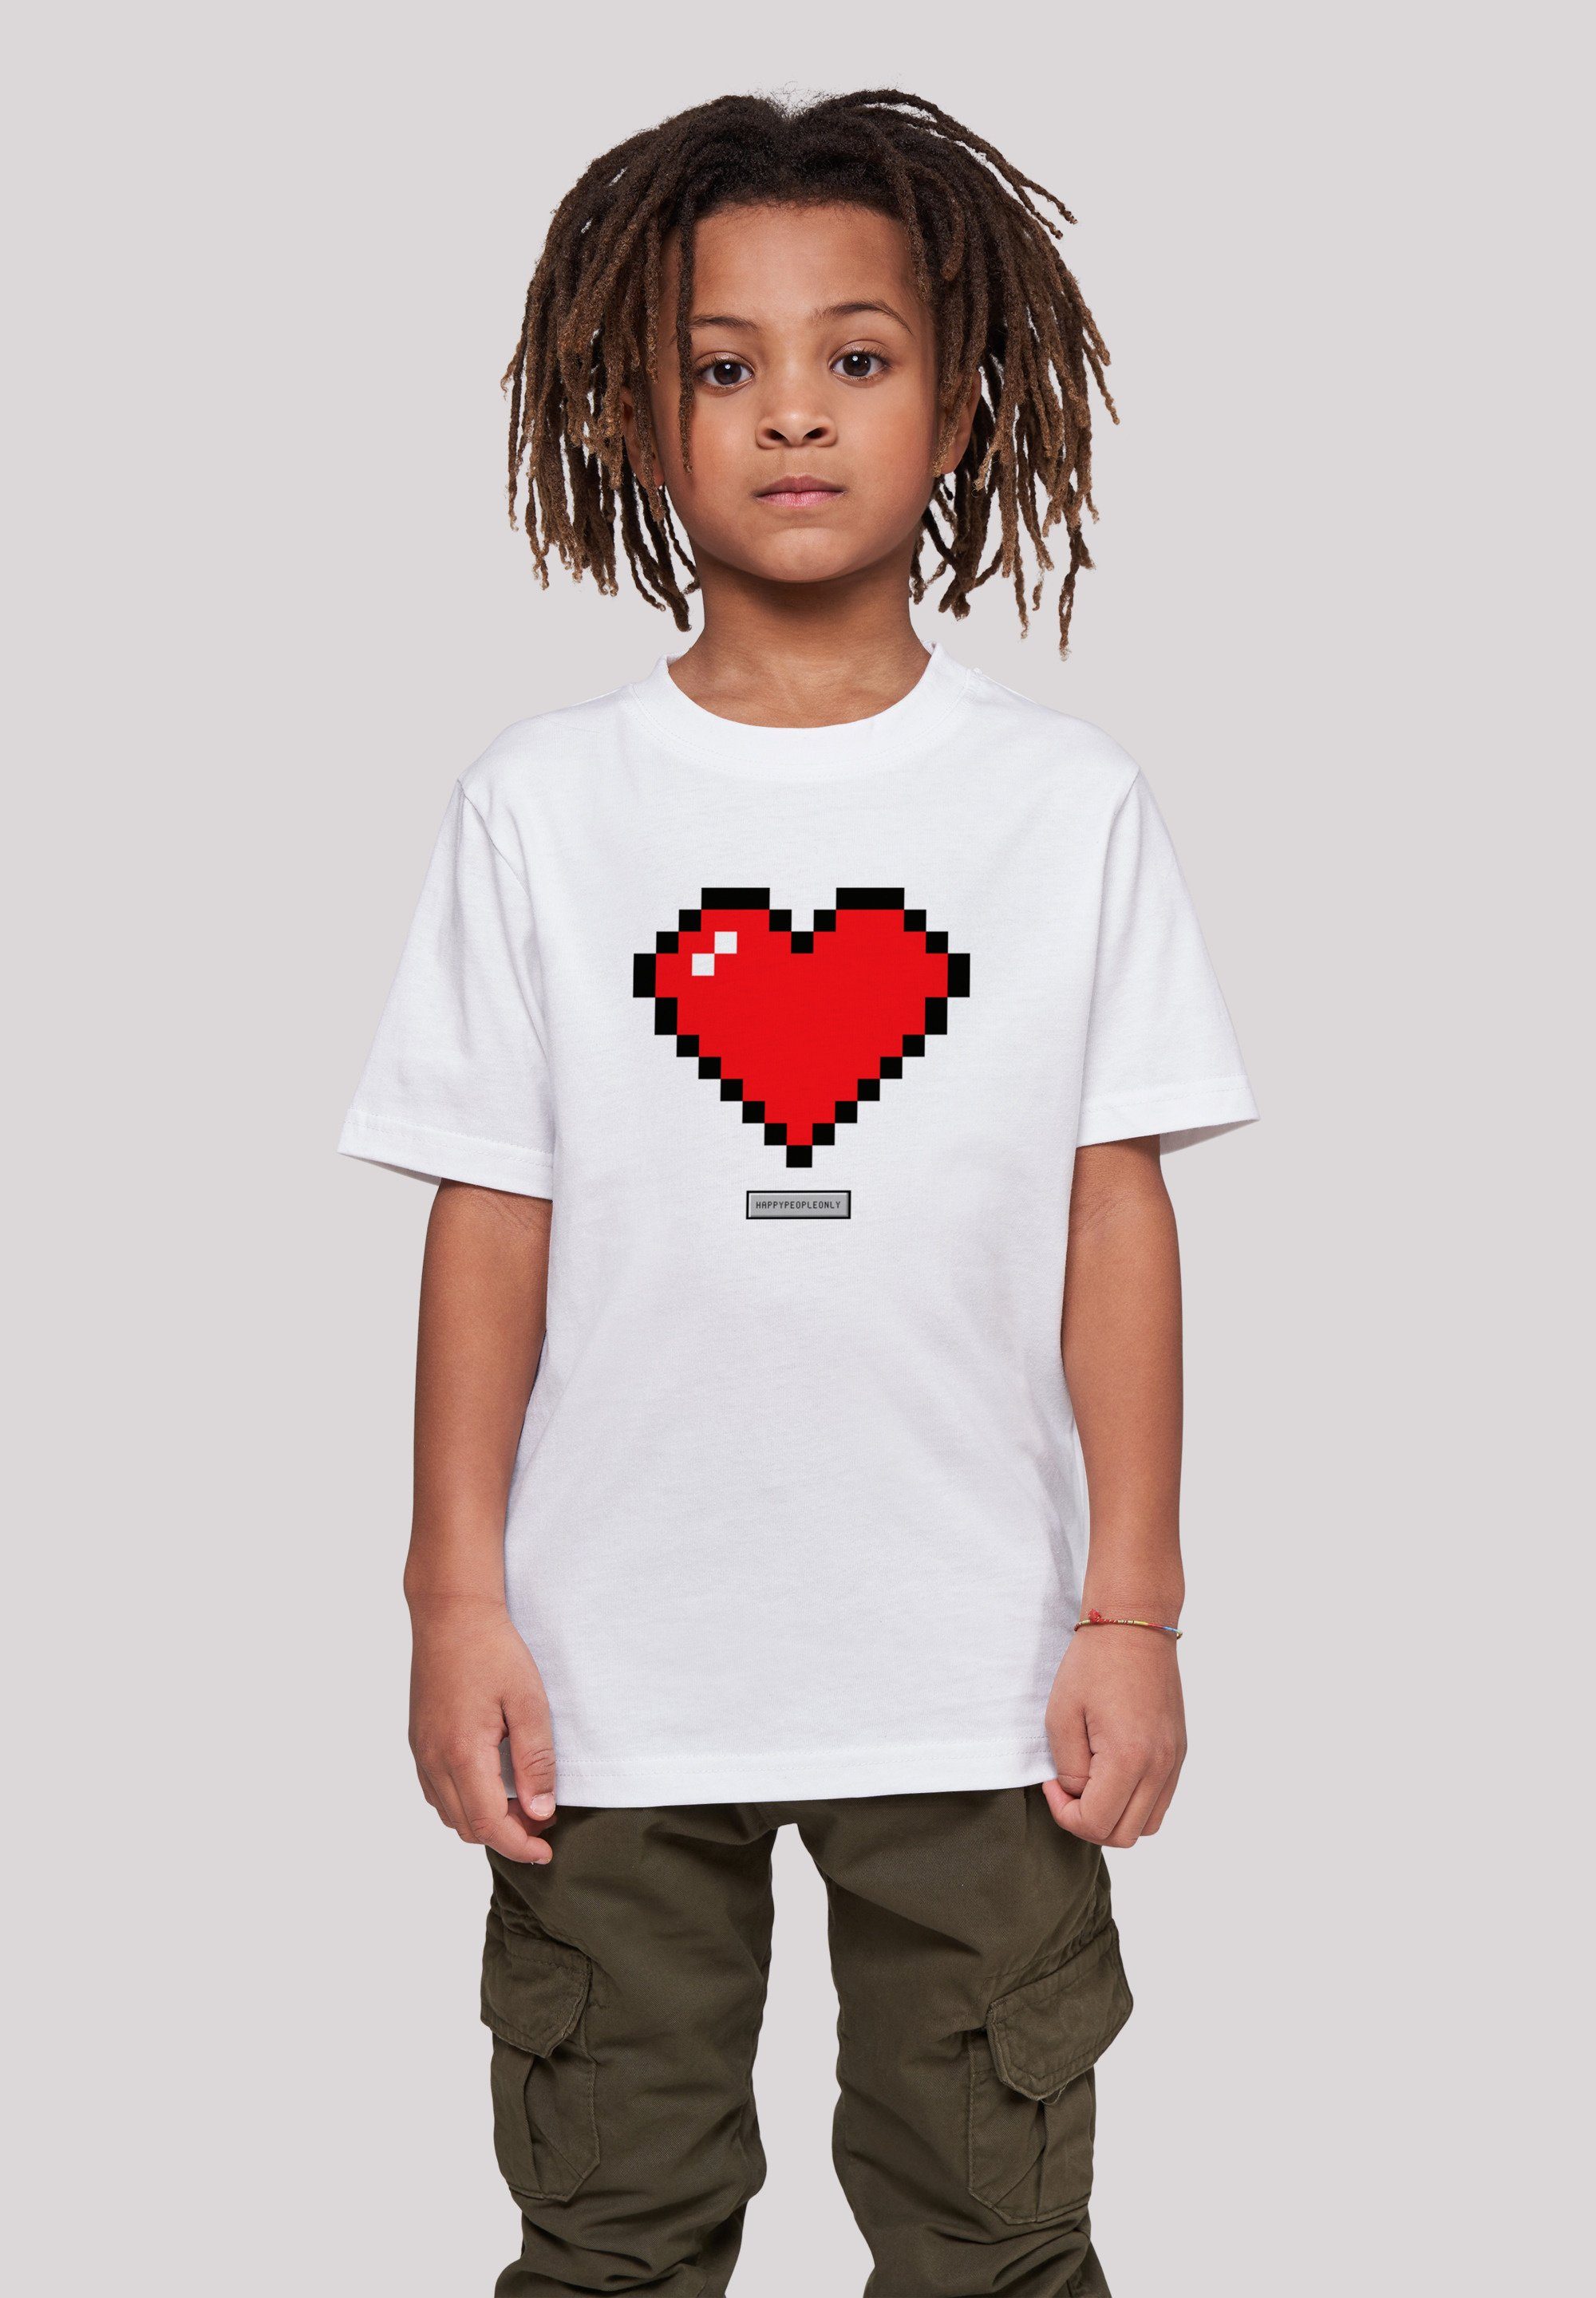 Good Happy T-Shirt 145 Vibes Print, 145/152 People Das und groß F4NT4STIC Herz trägt Größe ist cm Model Pixel